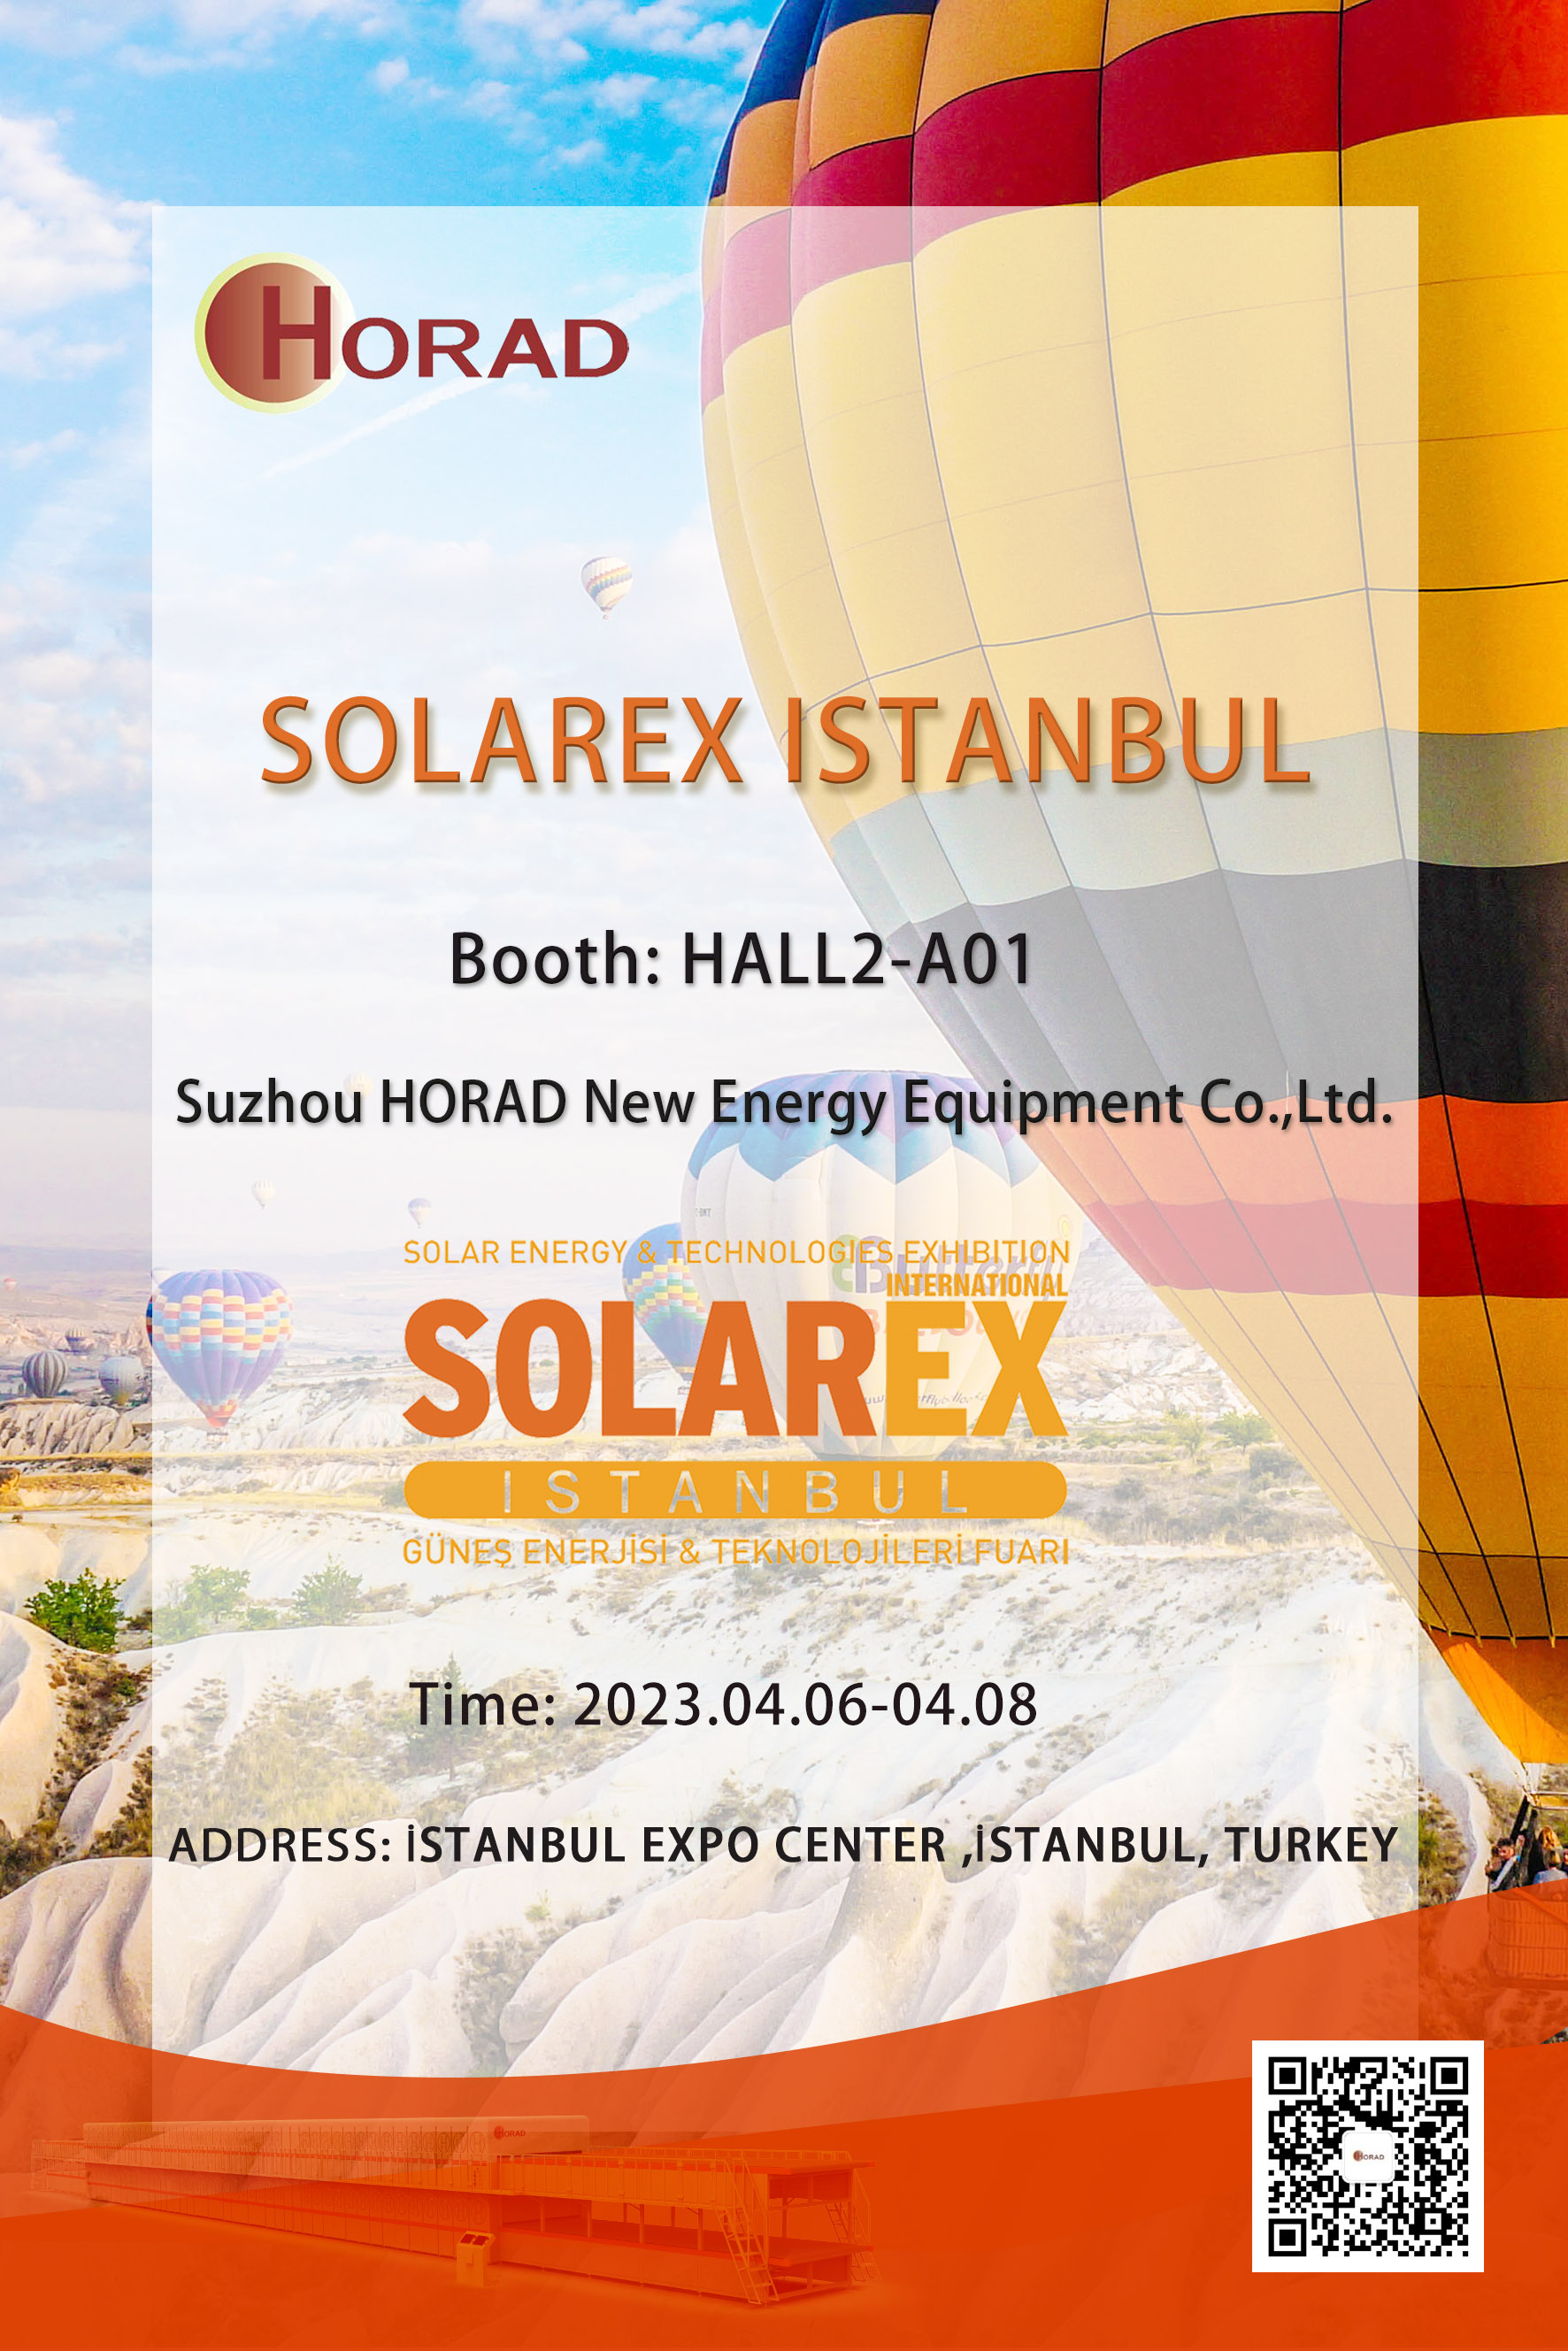 [Avis d'exposition] Horad vous rencontrera en 2023 EXPOSITION Türkiye SOLAREX ISTANBUL